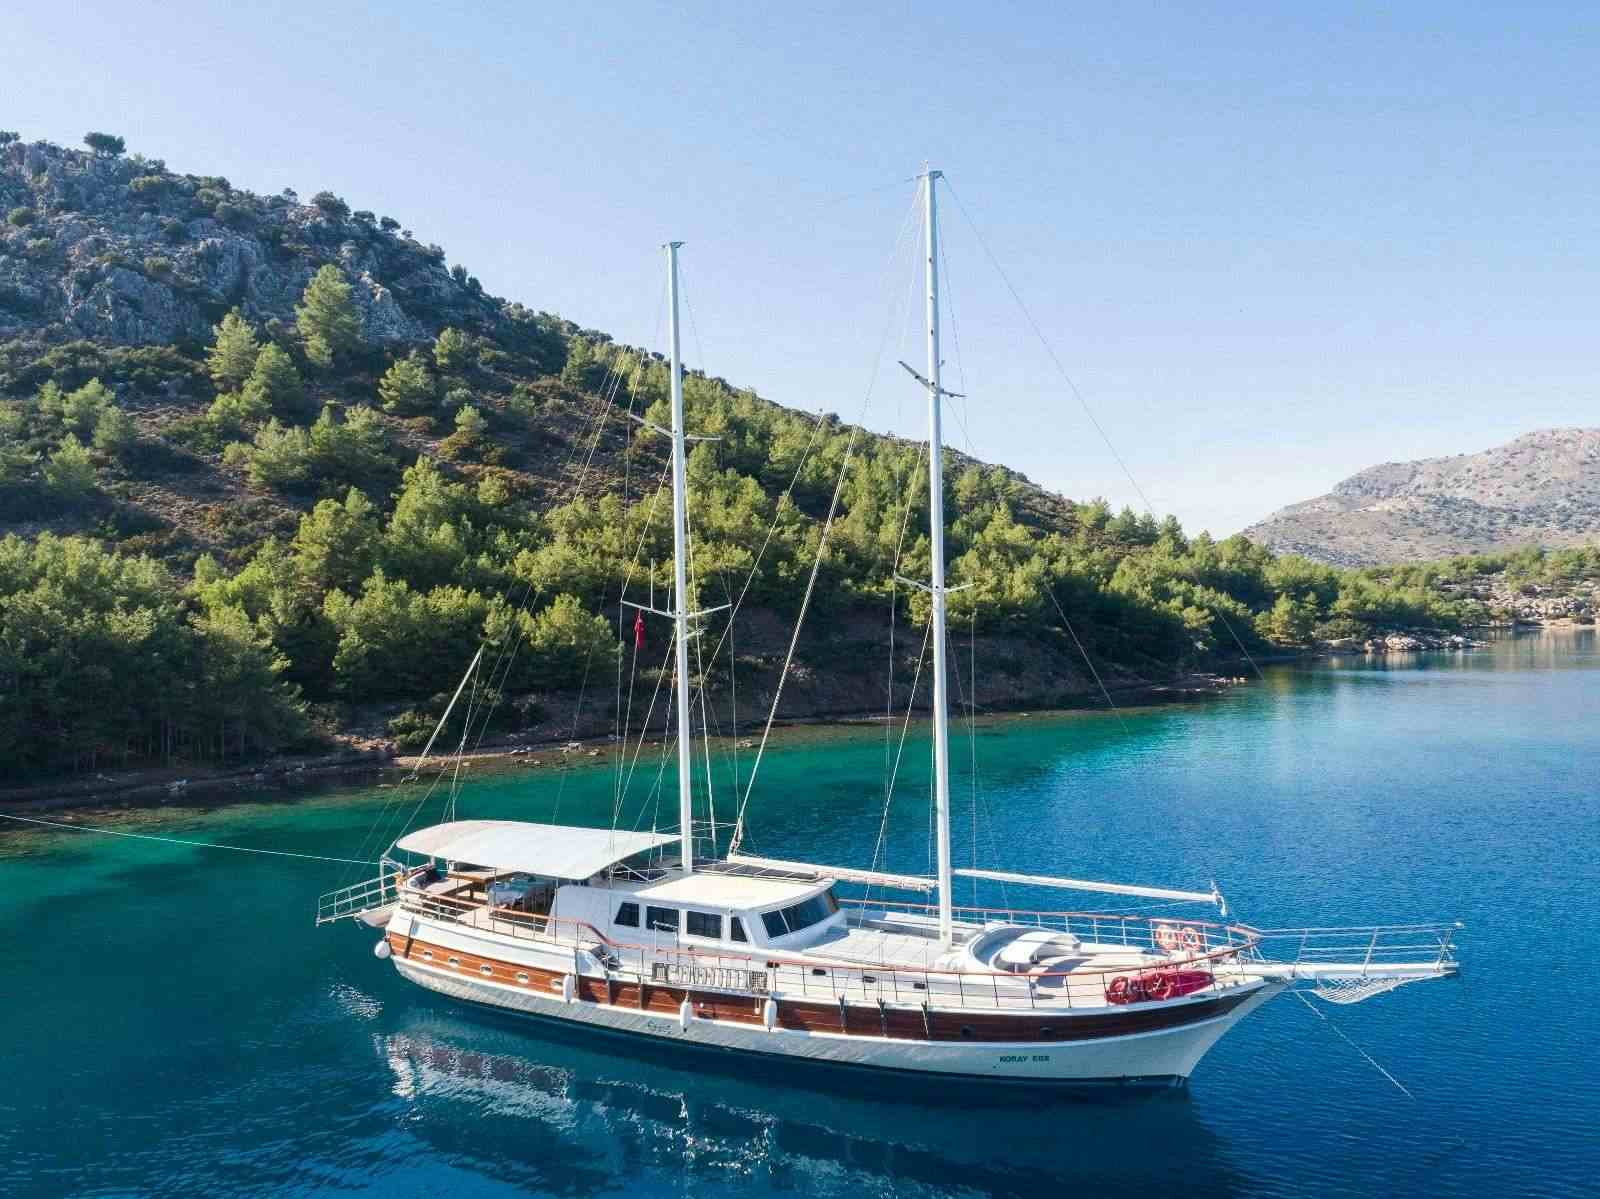 koray ege - Yacht Charter Skopelos & Boat hire in Greece & Turkey 1